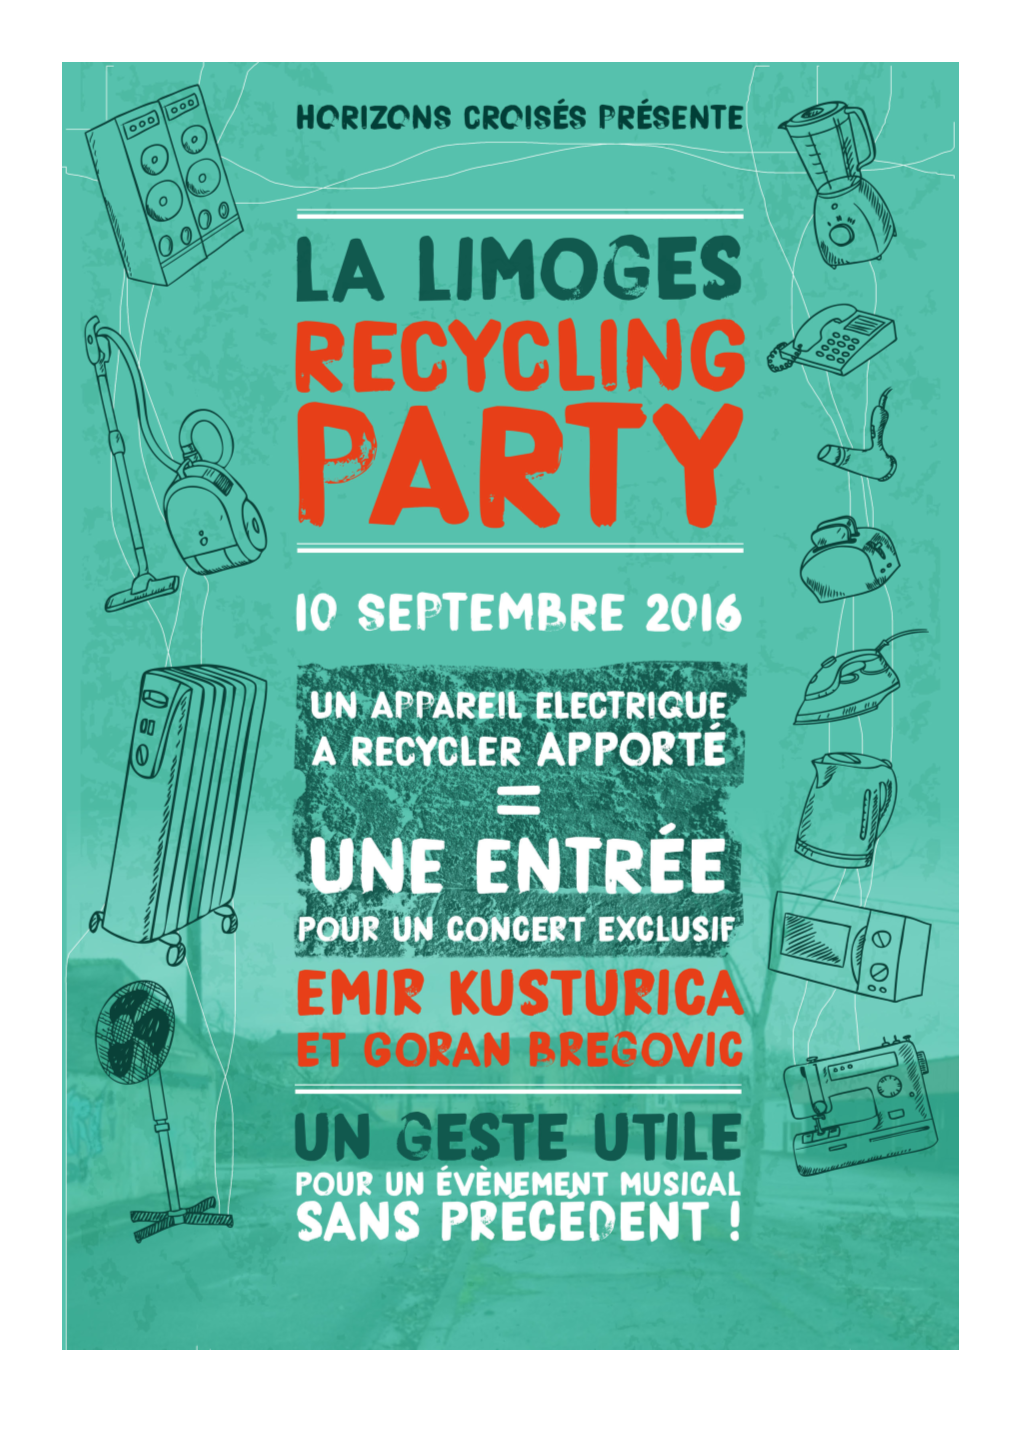 La Limoges Recycling Party, C’Est L’Occasion De Se Faire Connaître, D’Expliquer Au Public Pour- Quoi Il Faut Recycler Et Comment Ça Marche